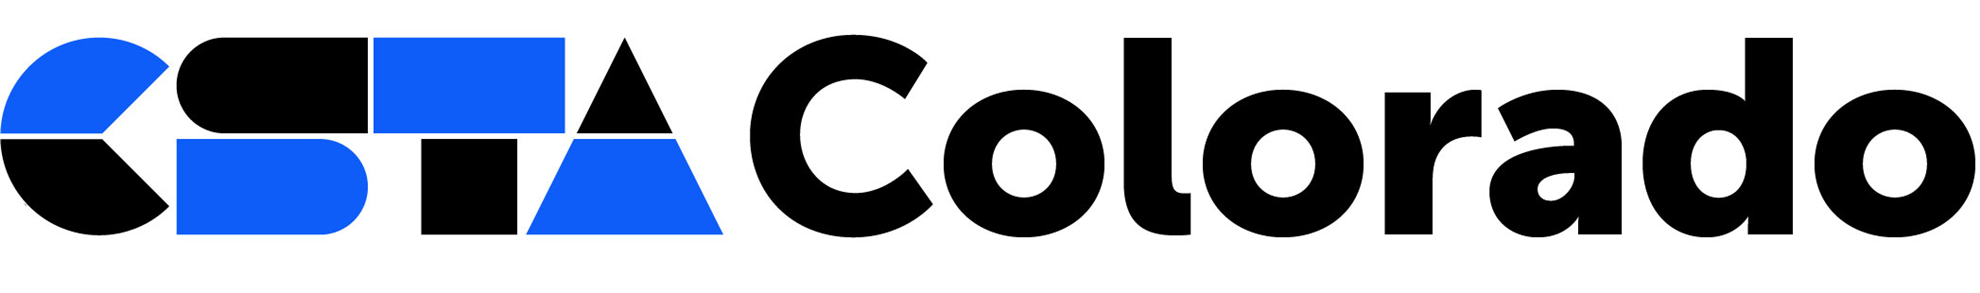 CSTA Colorado logo